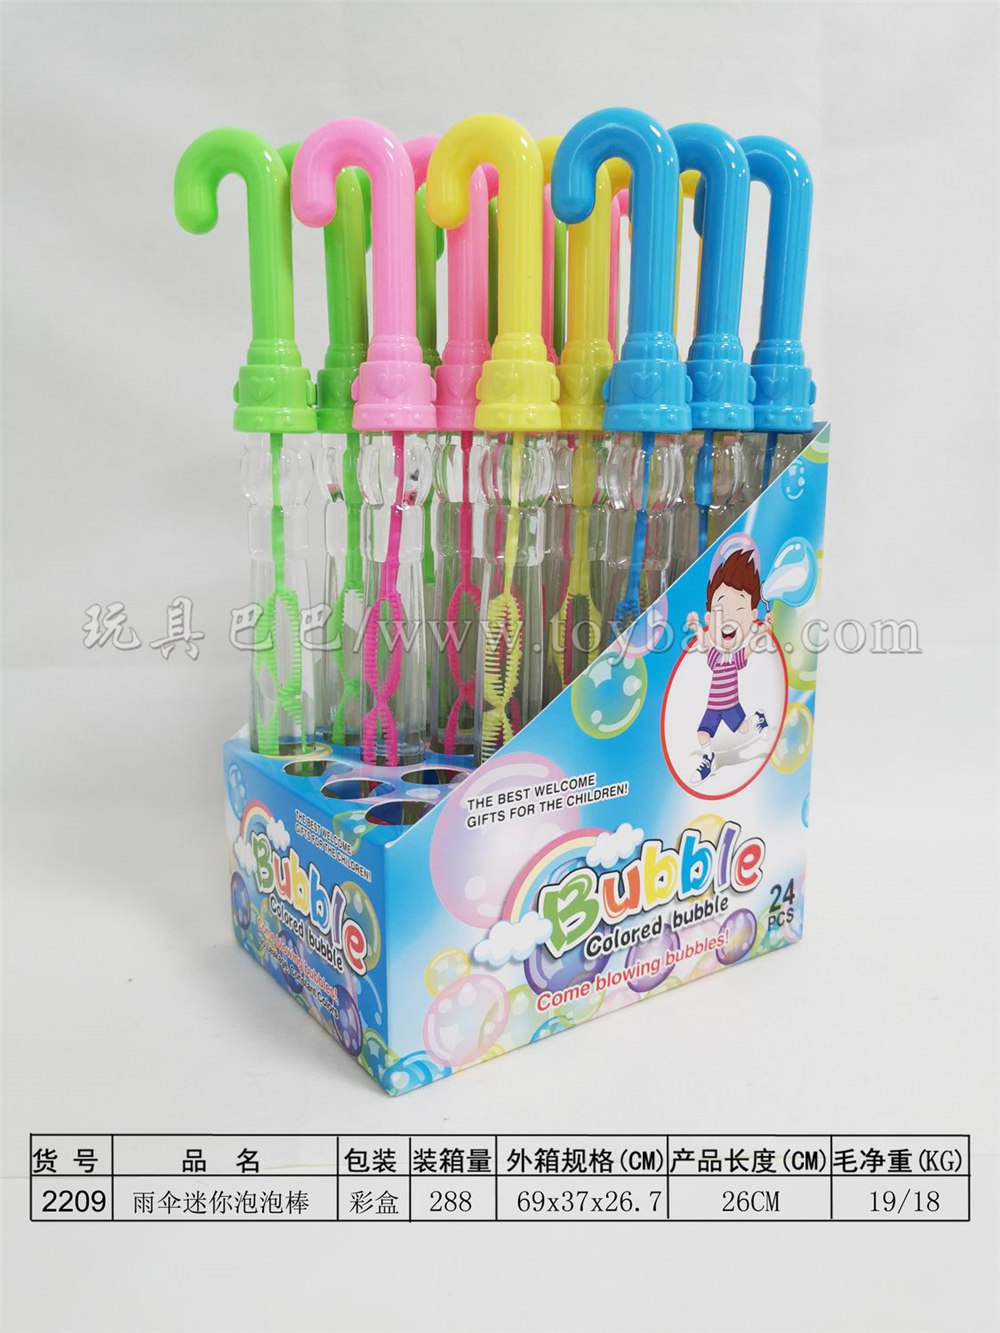 26cm umbrella bubble stick 24pcs / box (4 colors)